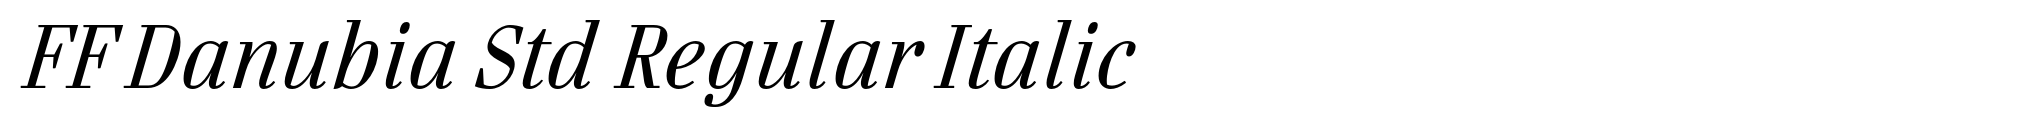 FF Danubia Std Regular Italic image